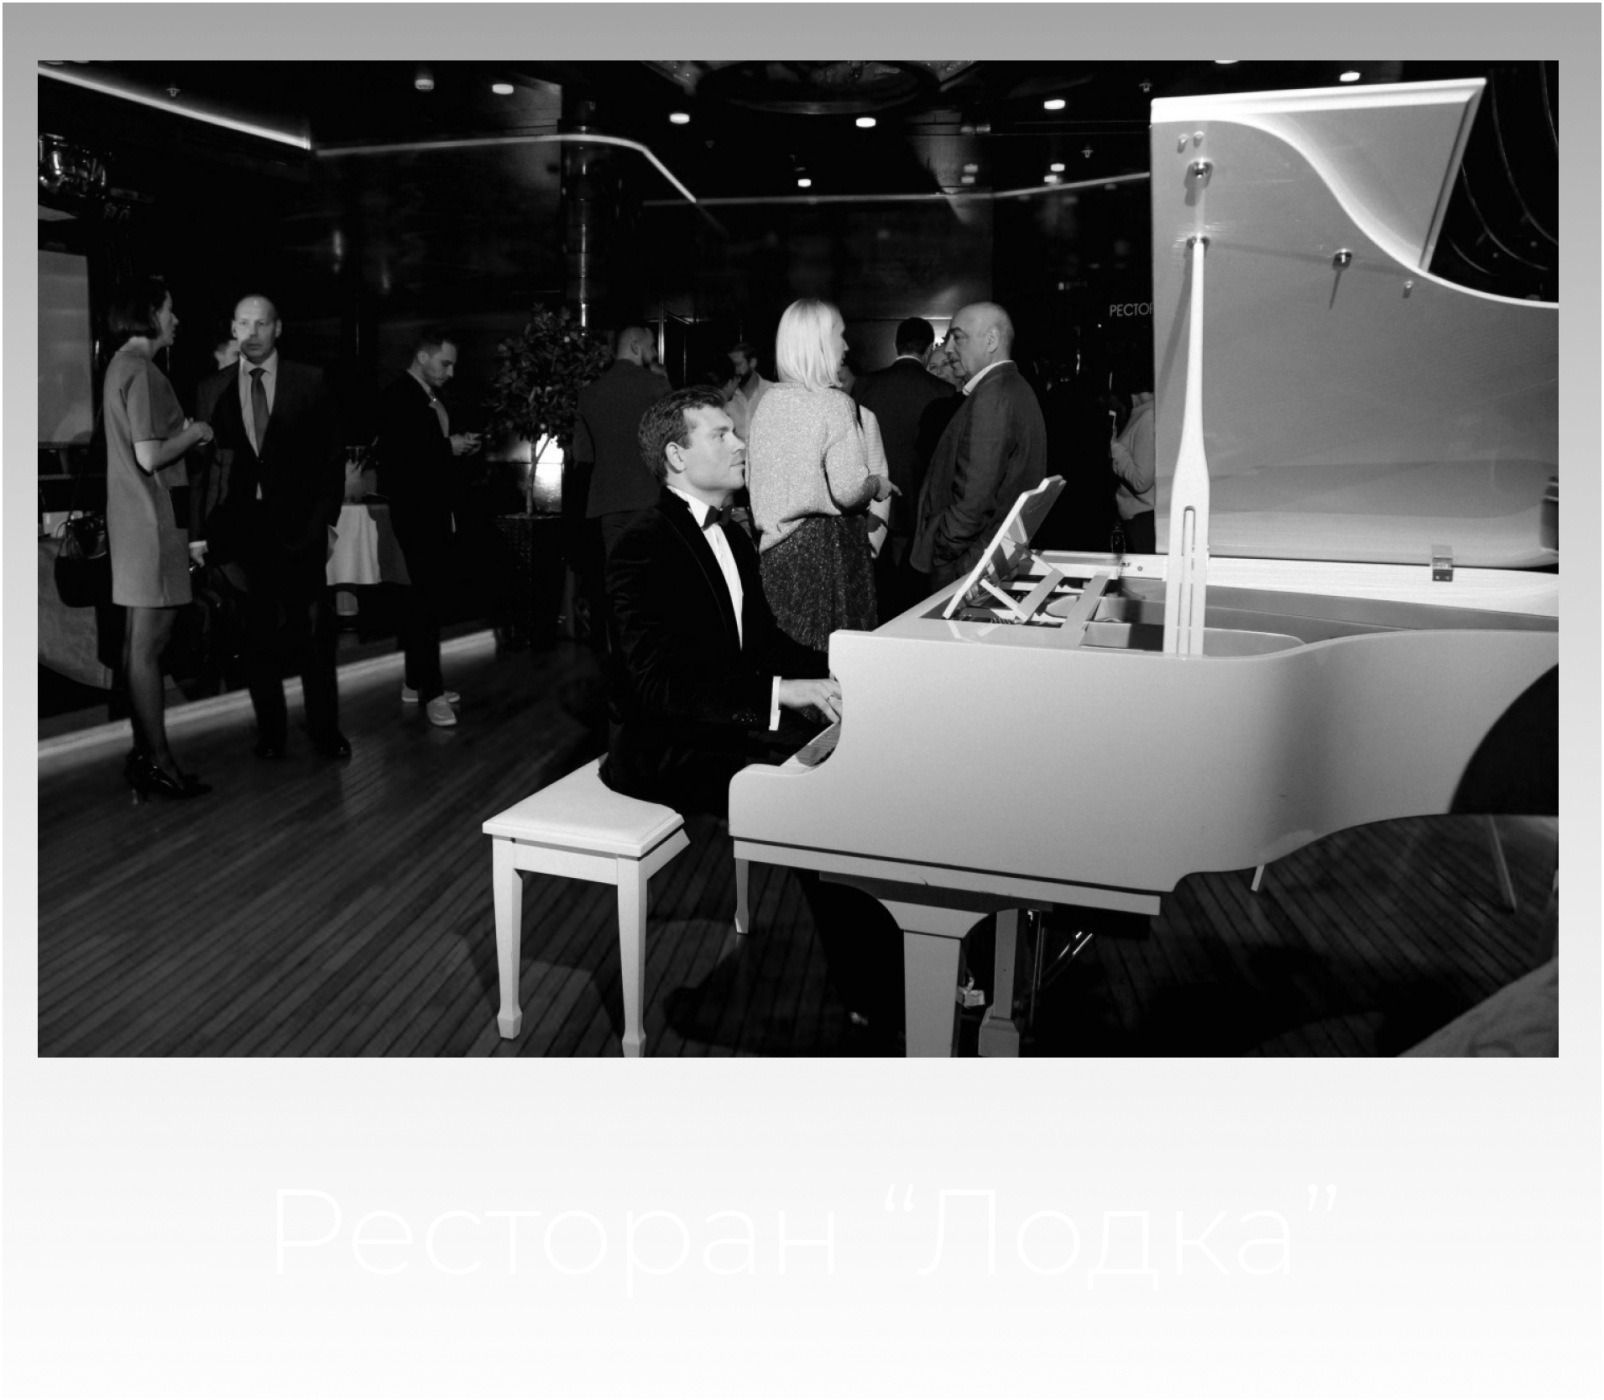 Эстрадный пианист Александр Ершов - выступление на корпоративе в Lotte Plaza. Ресторан "Лодка"